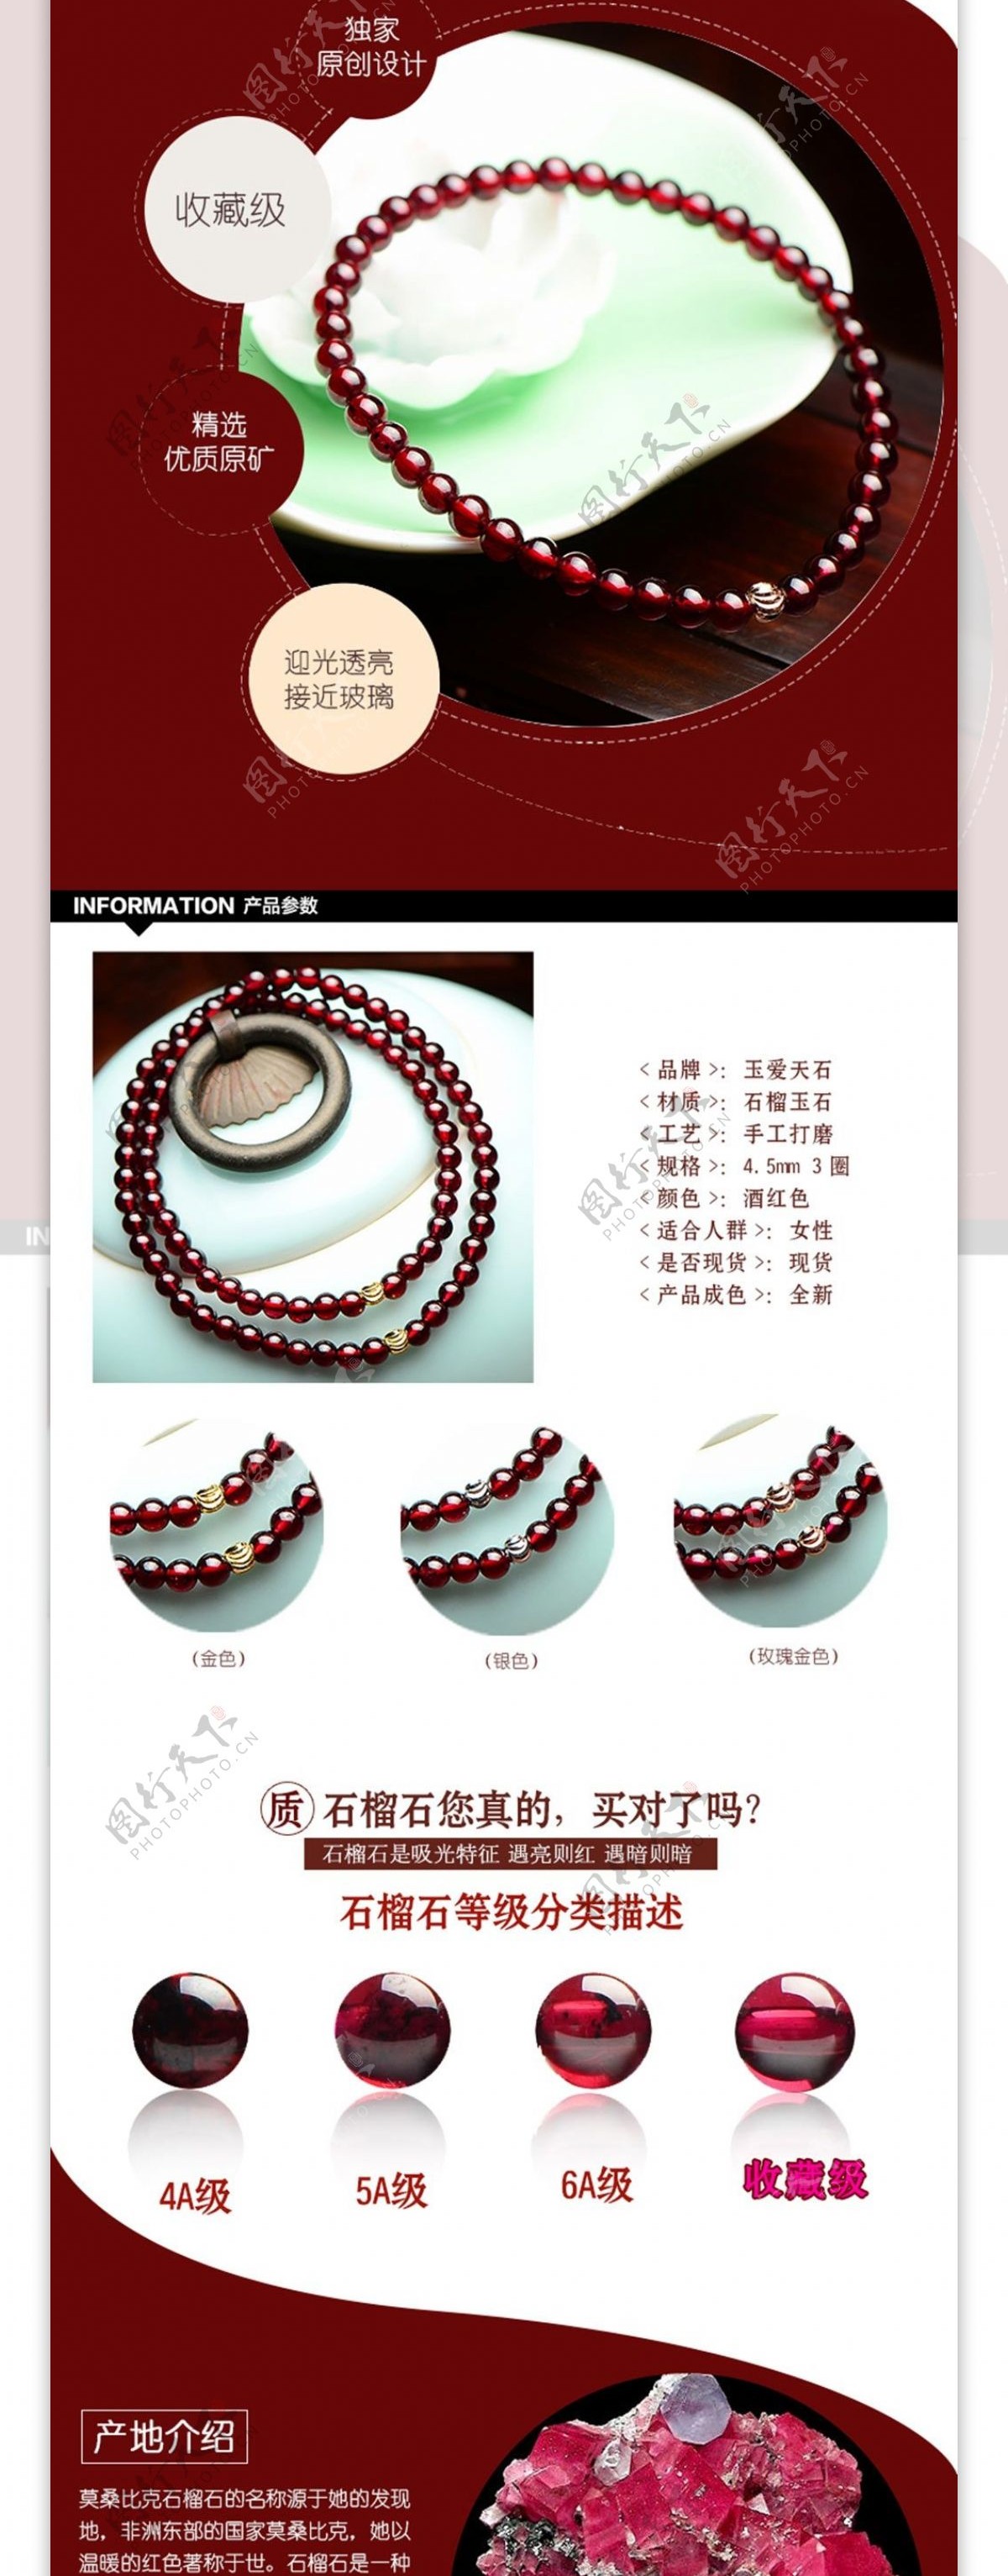 复古典中国风详情模板酒红色石榴石手串饰品